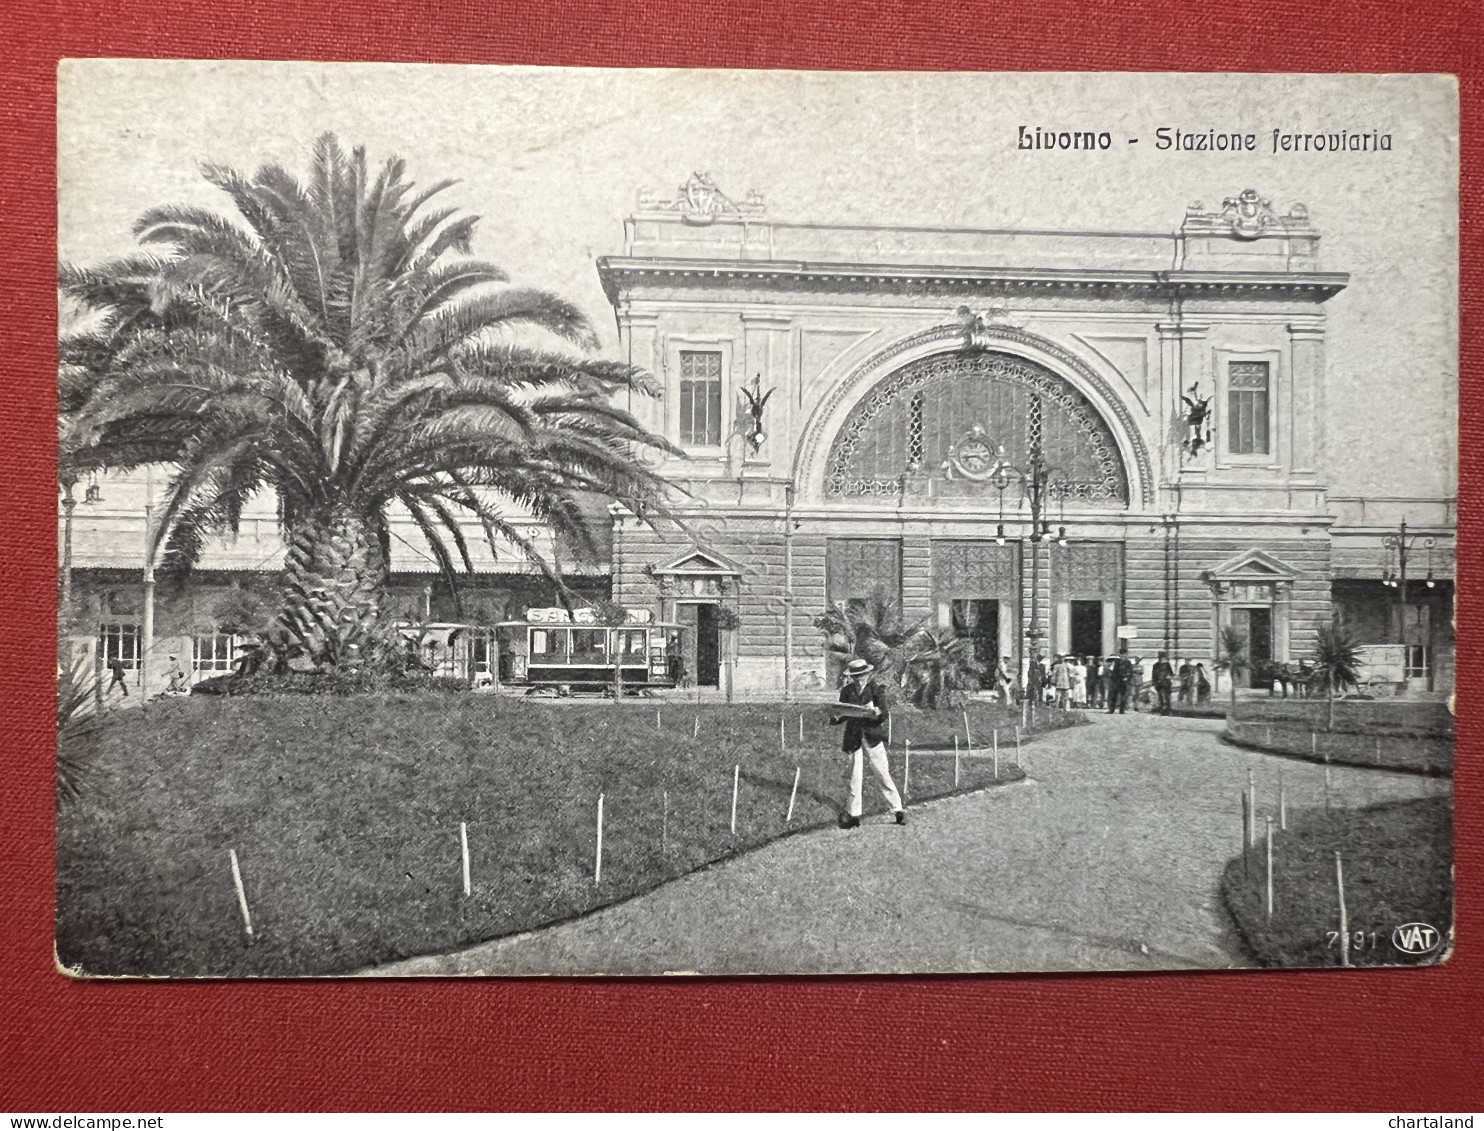 Cartolina - Livorno - Stazione Ferroviaria - 1920 Ca. - Livorno